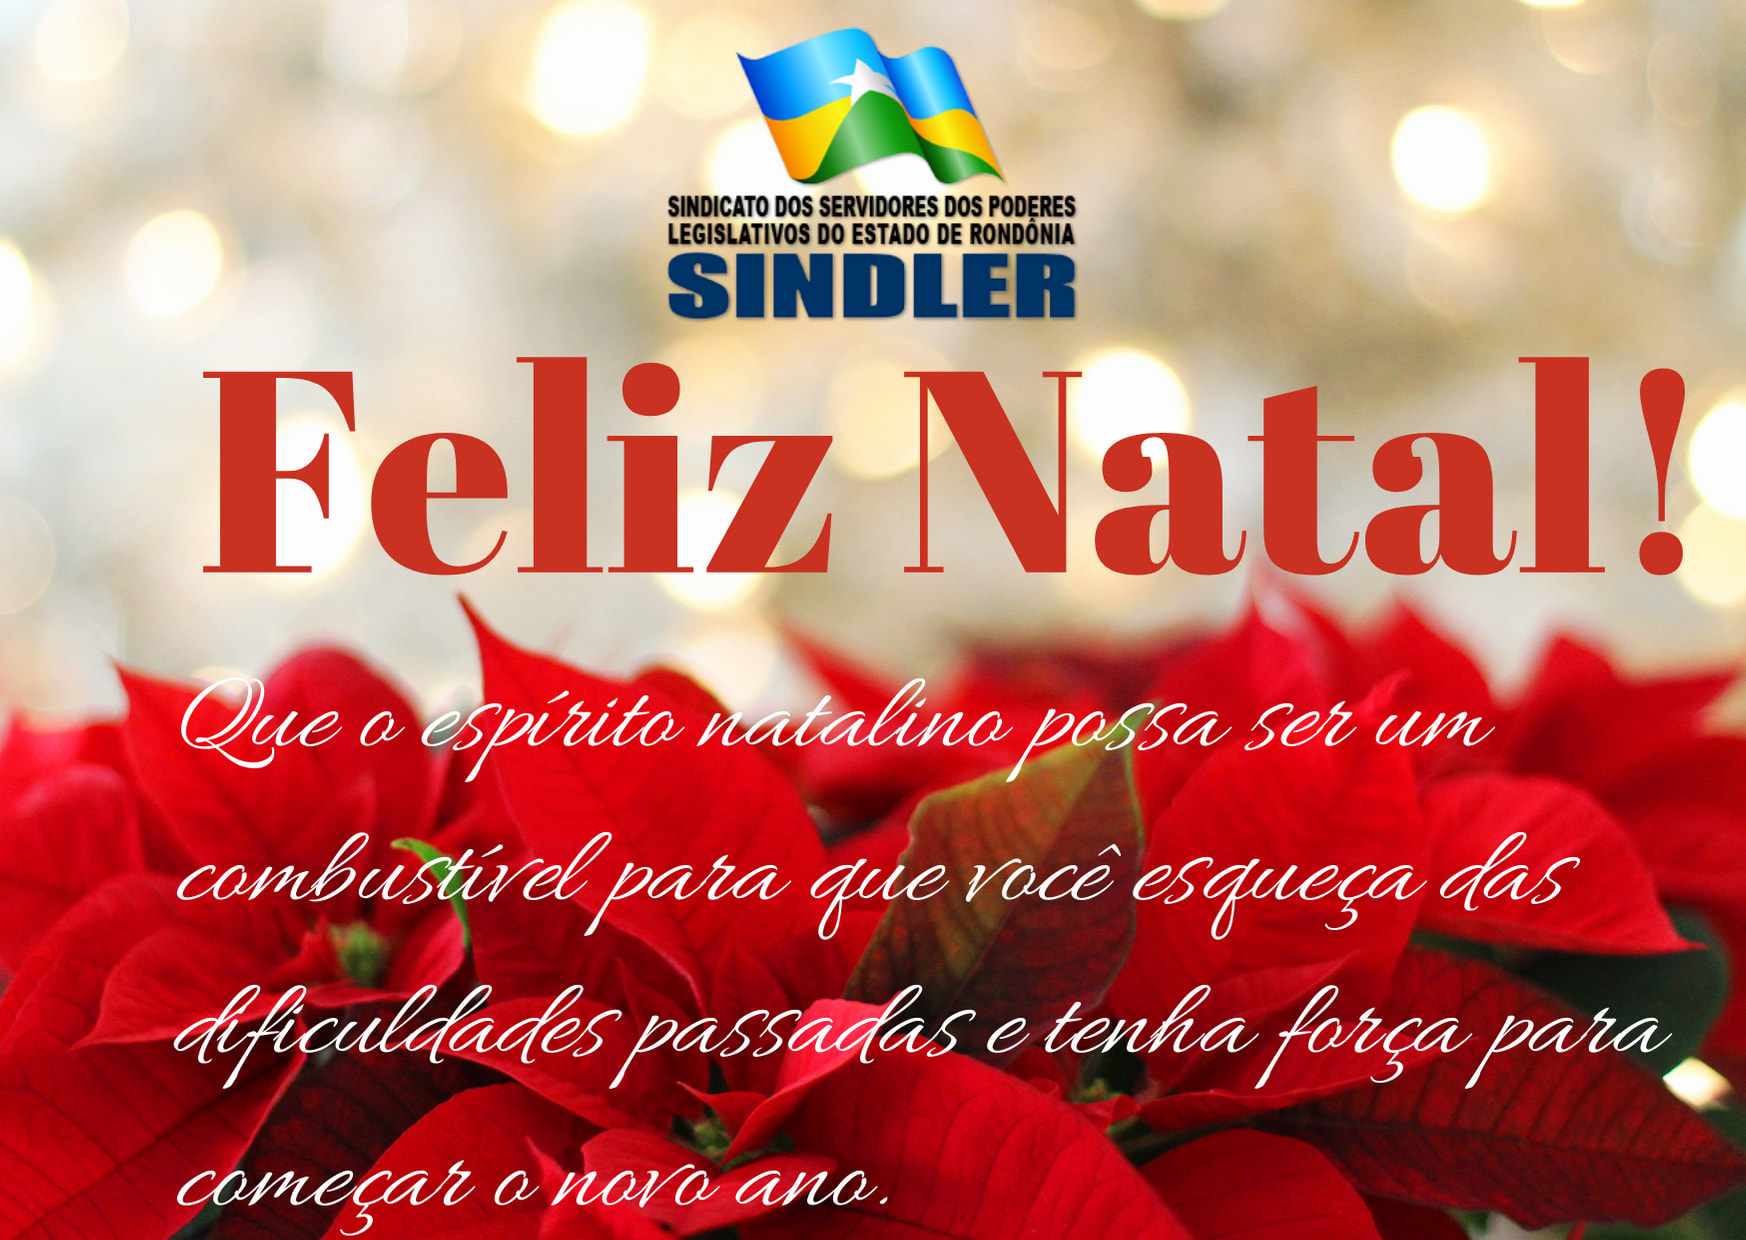 Feliz Natal 2020 - SINDLER - Sindicato dos Servidores dos Poderes  Legislativos do Estado de Rondônia